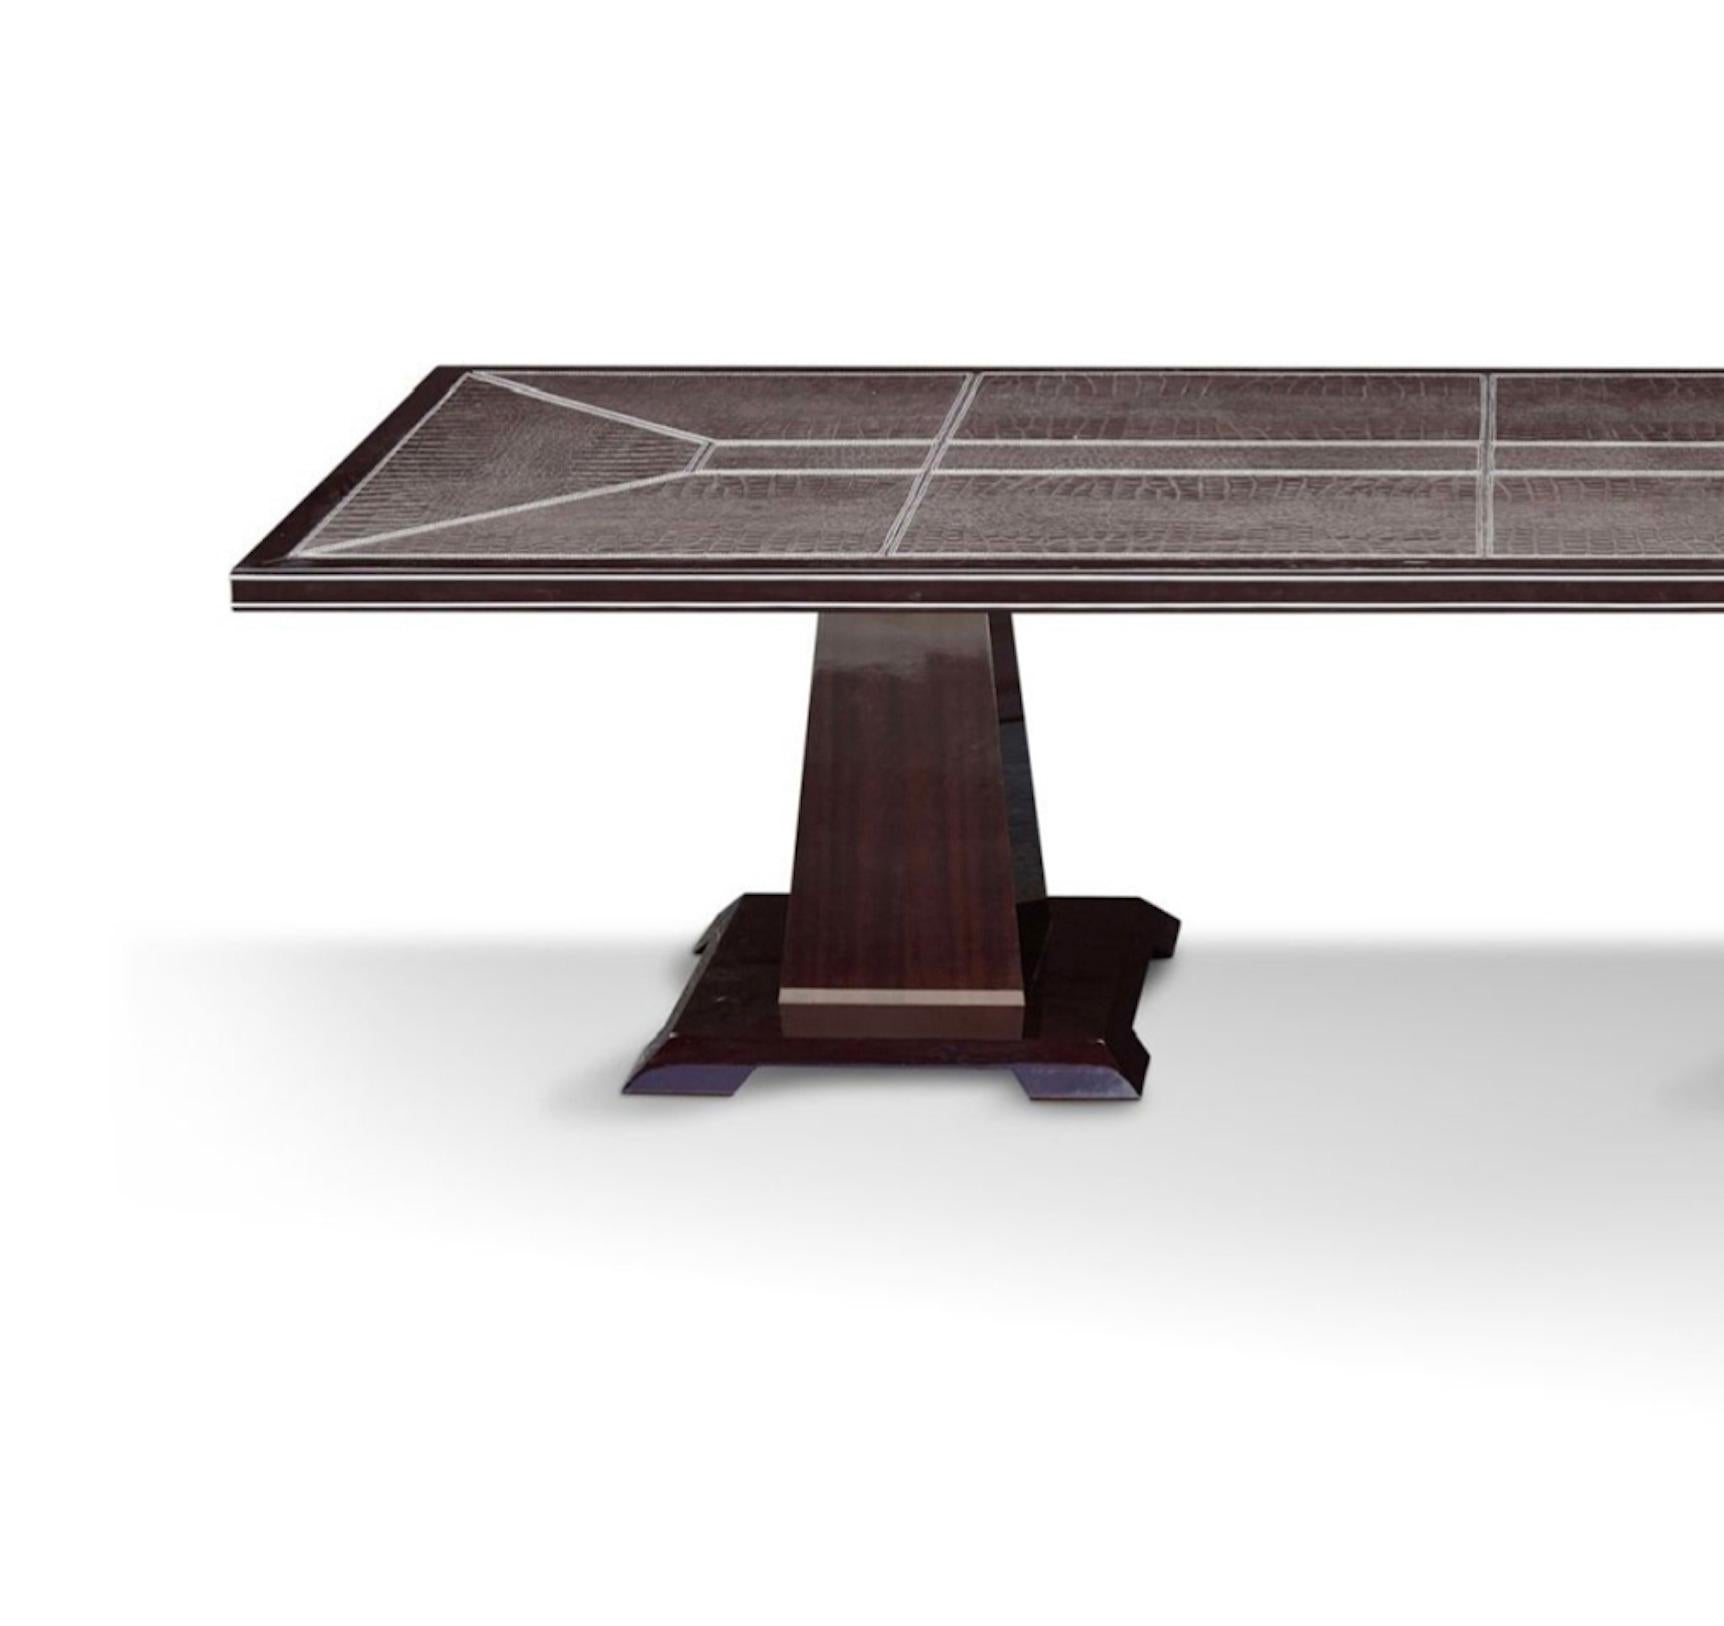 Table rectangulaire en bois d'acajou et tablette en cuir imprimé avec couture couleur corde et détails en acier nickelé
Dimension : cm 300 x 100 x h. 75.